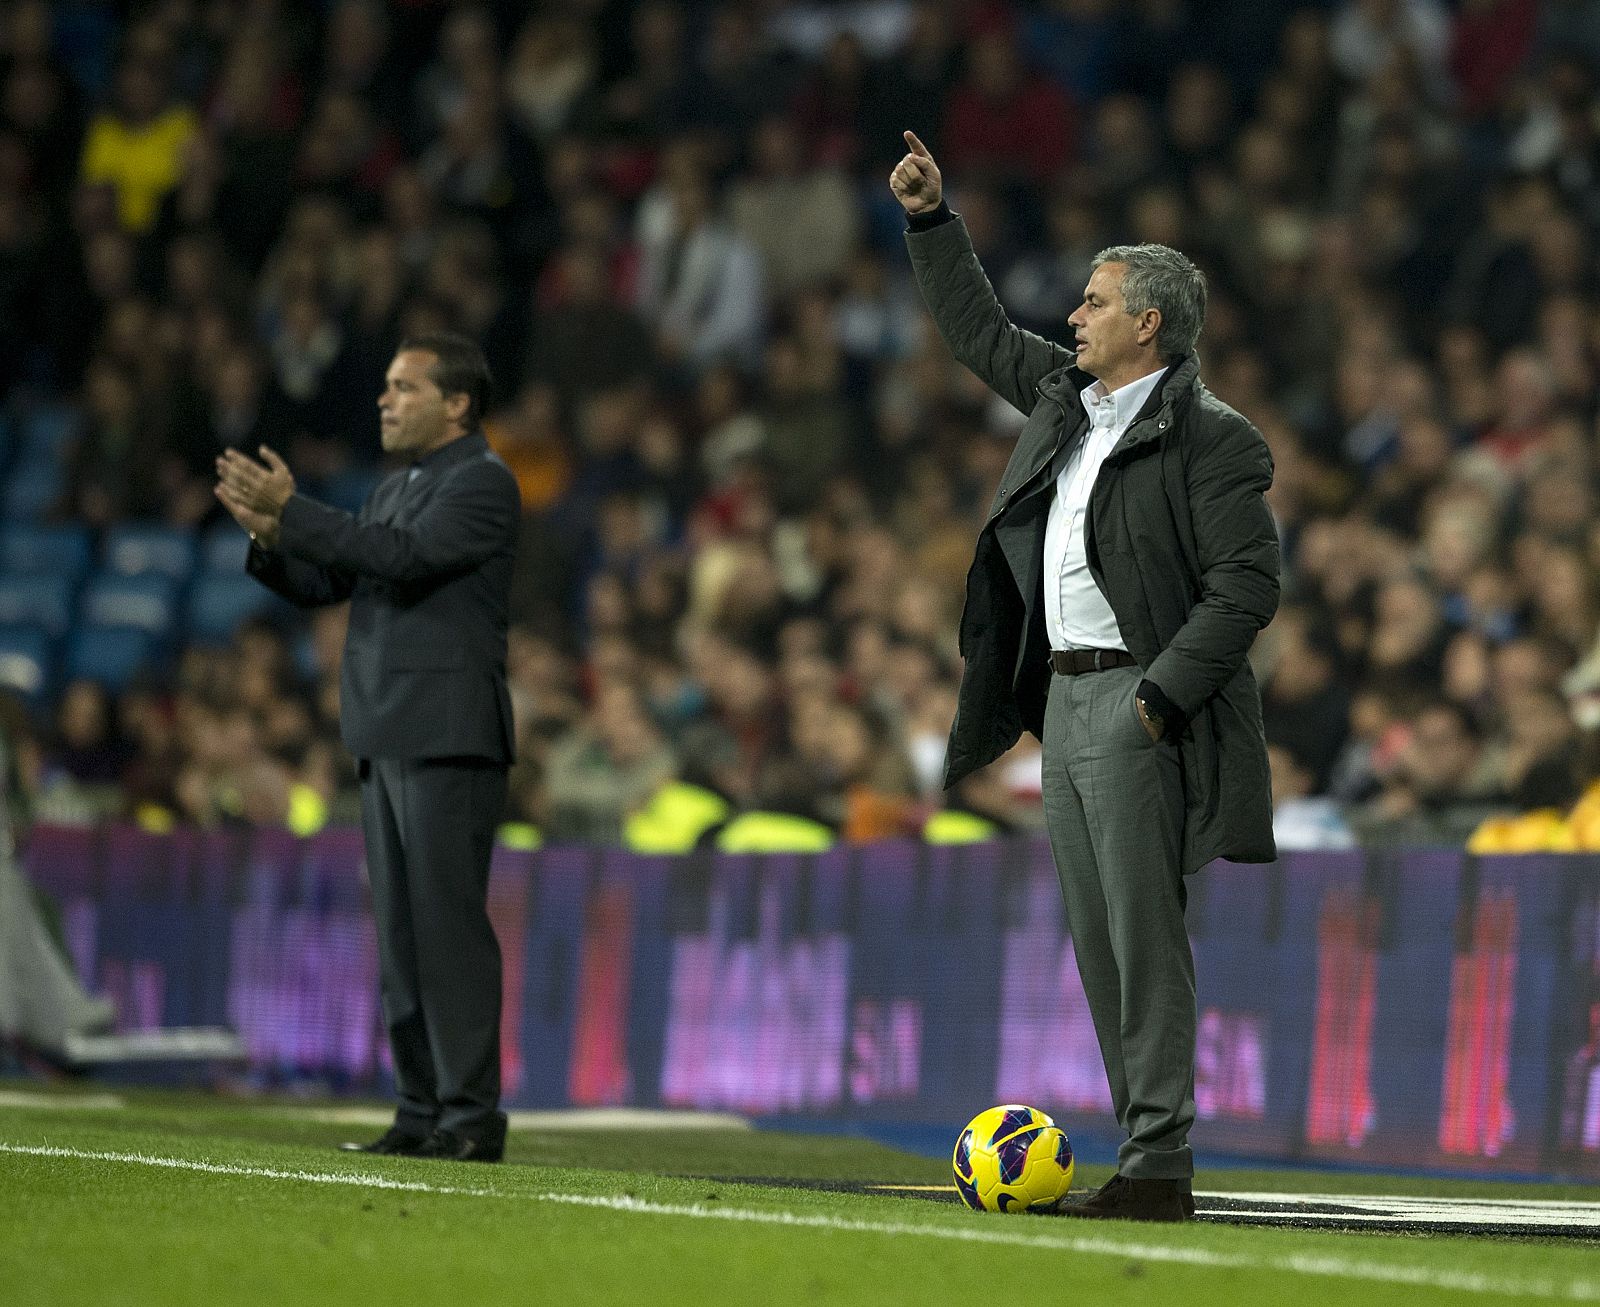 El entrenador del Real Madrid, Jose Mourinho, da instrucciones durante el partido